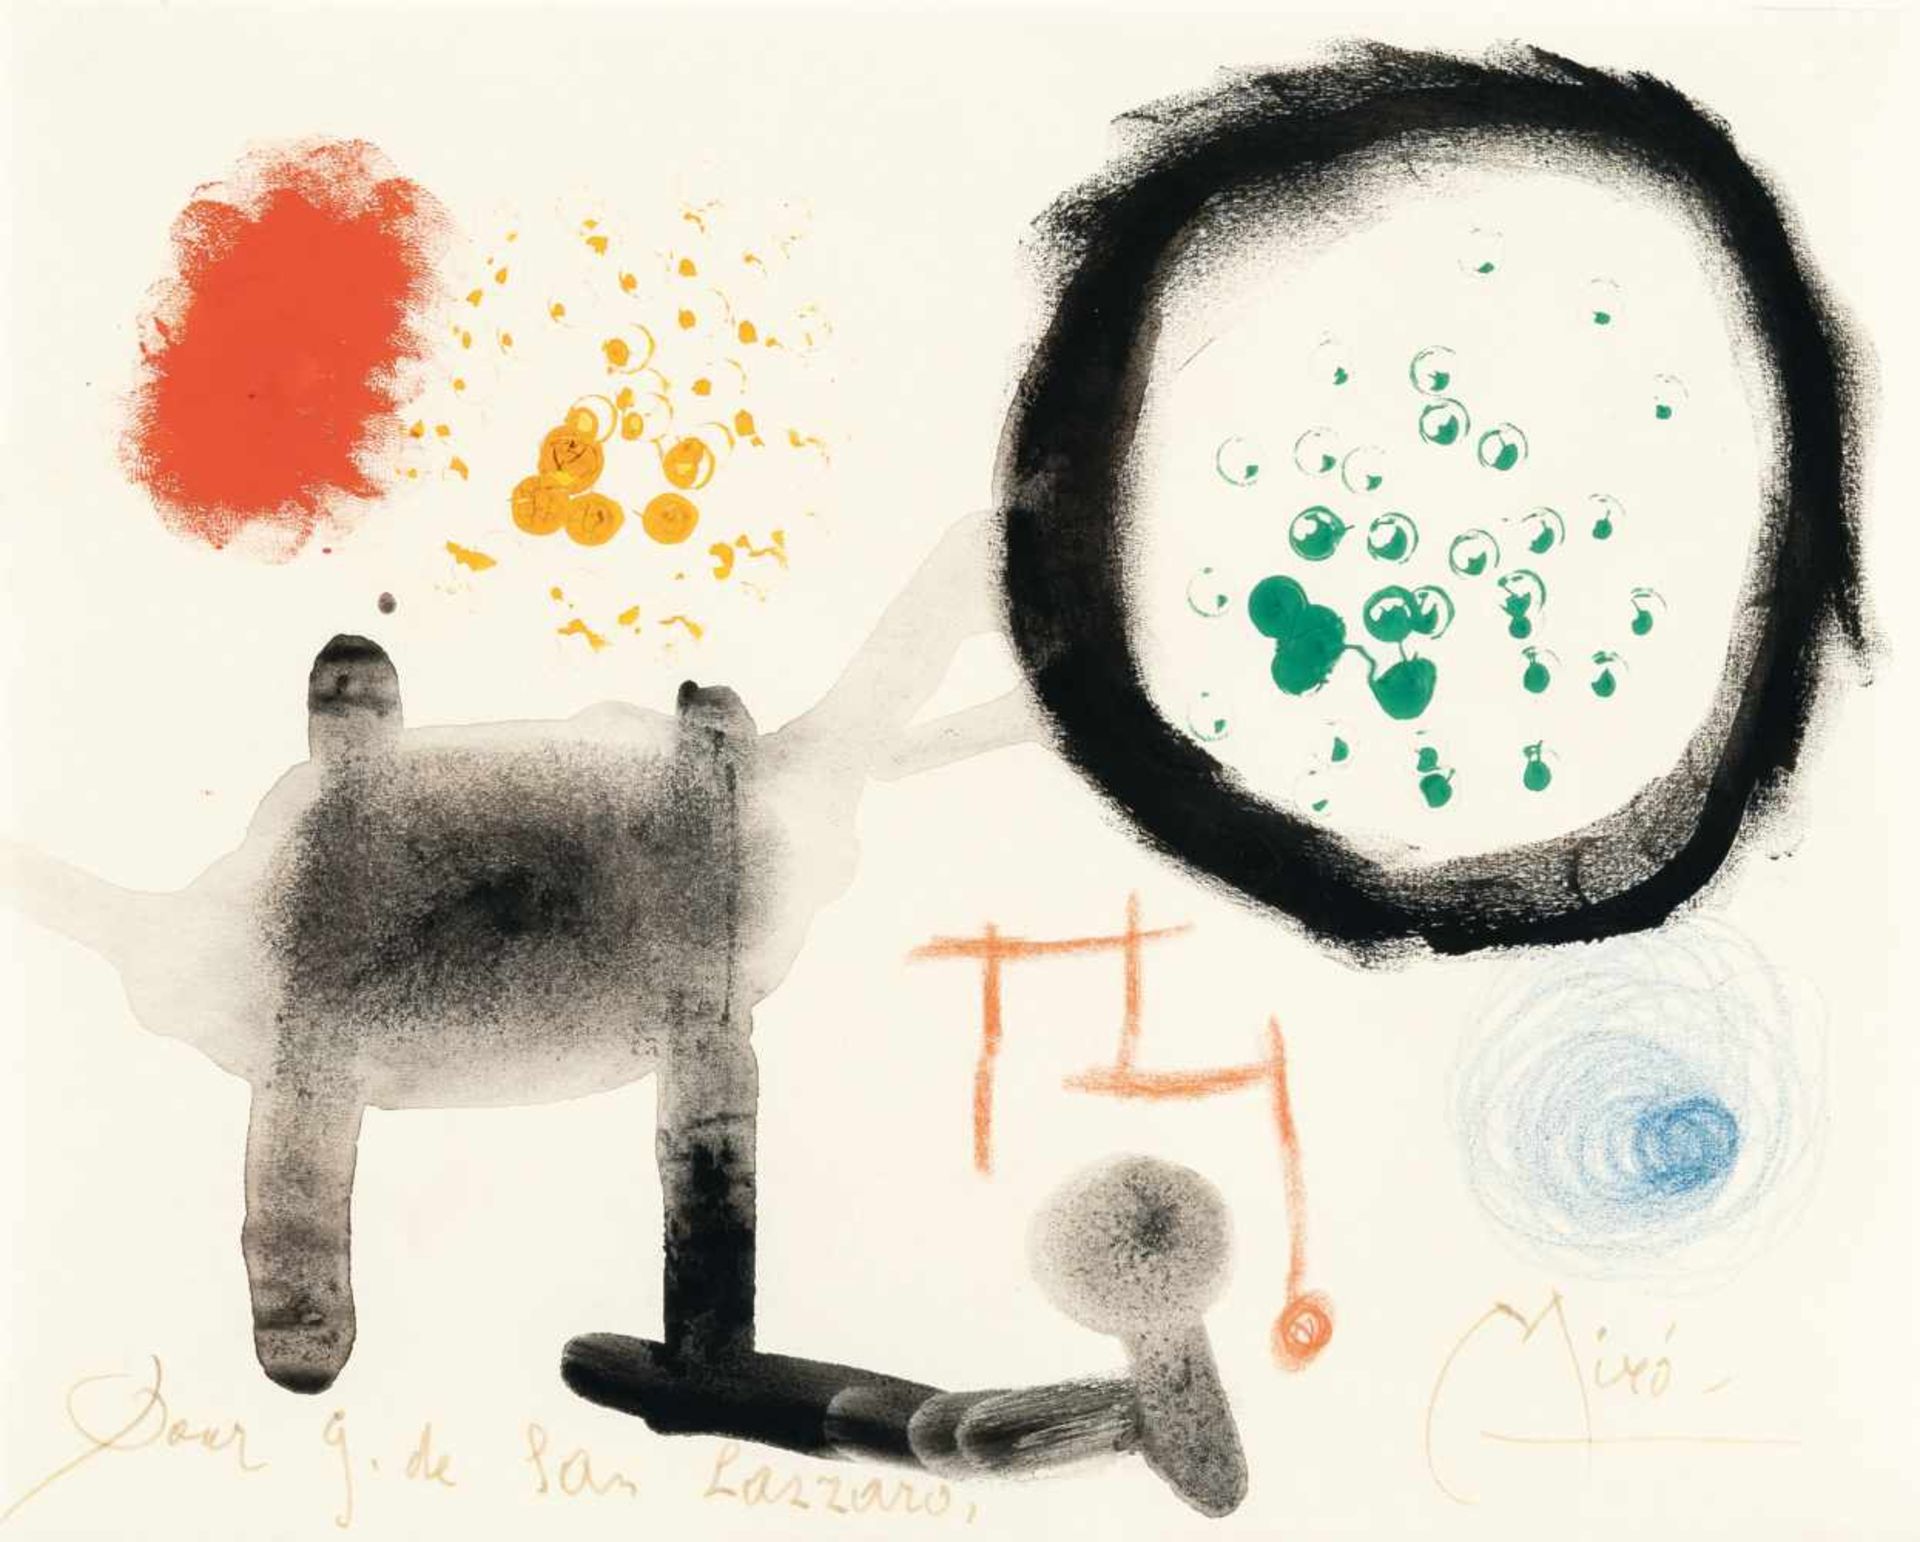 Joan MiróOhne TitelGouache, Aquarell und farbige Wachskreide auf Velin. (1949). Ca. 21 x 26